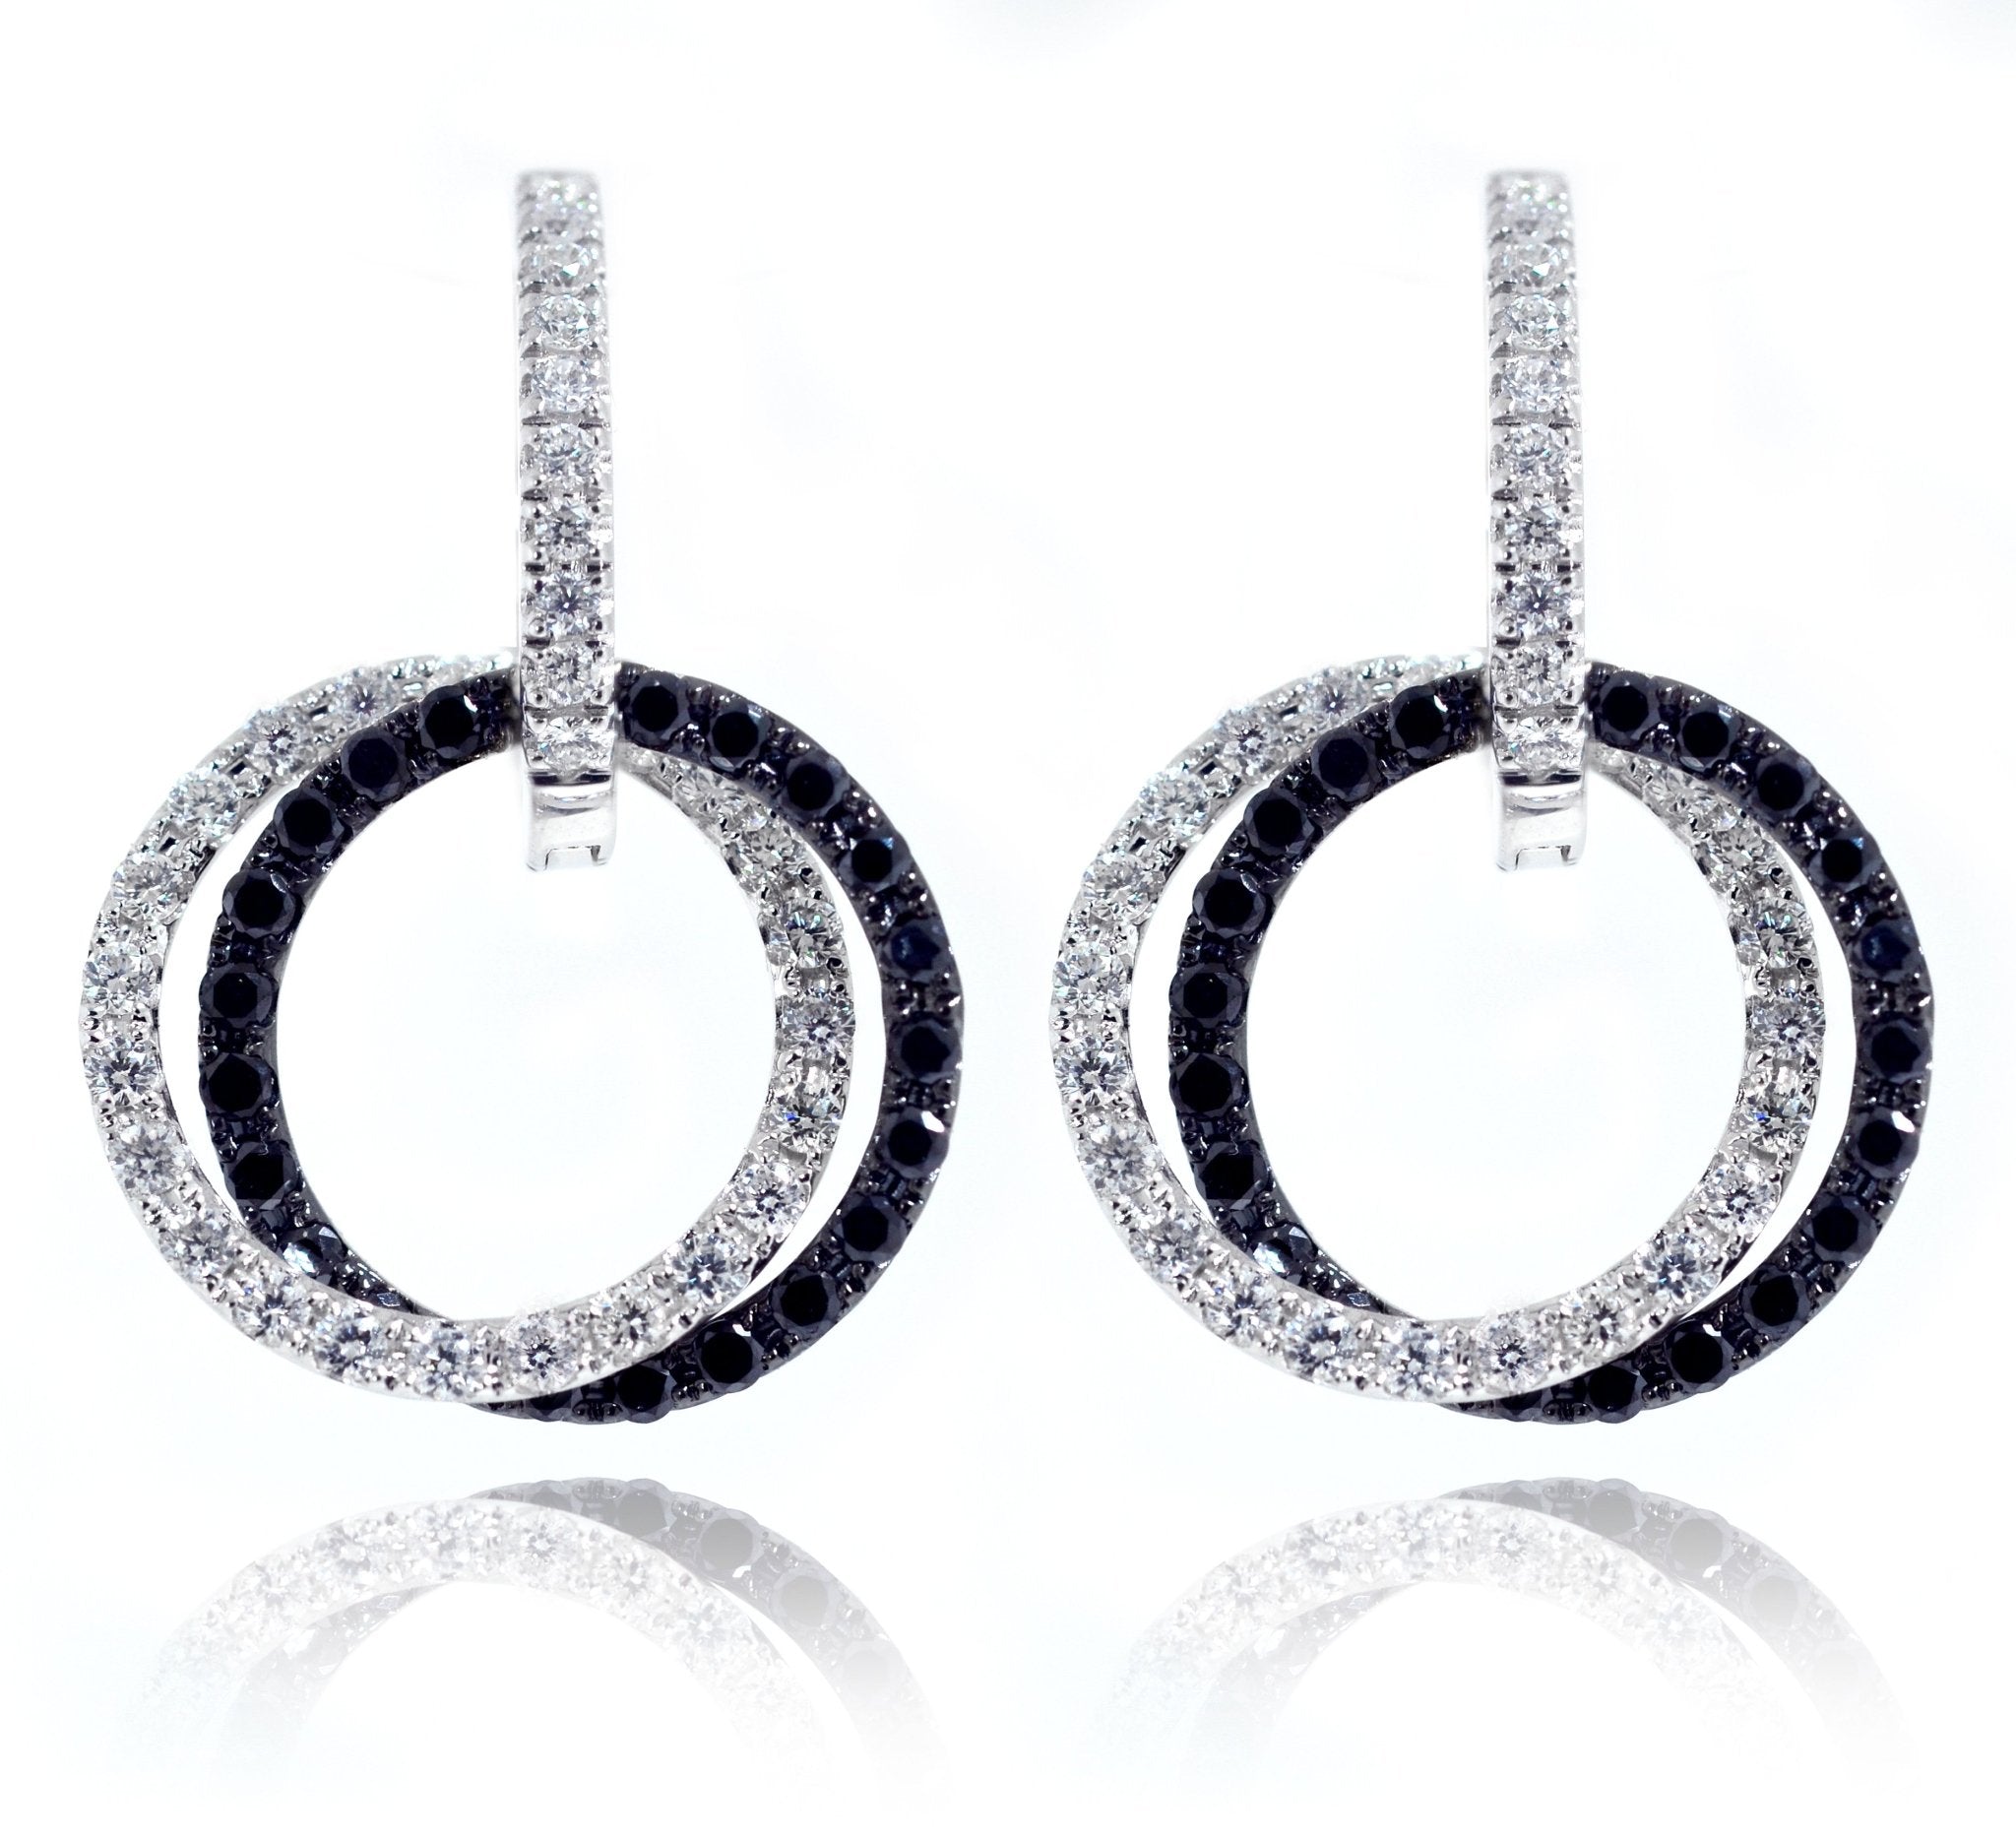 18ct White Gold Blk & Wht Diamond G/SI Earrings - ForeverJewels Design Studio 8